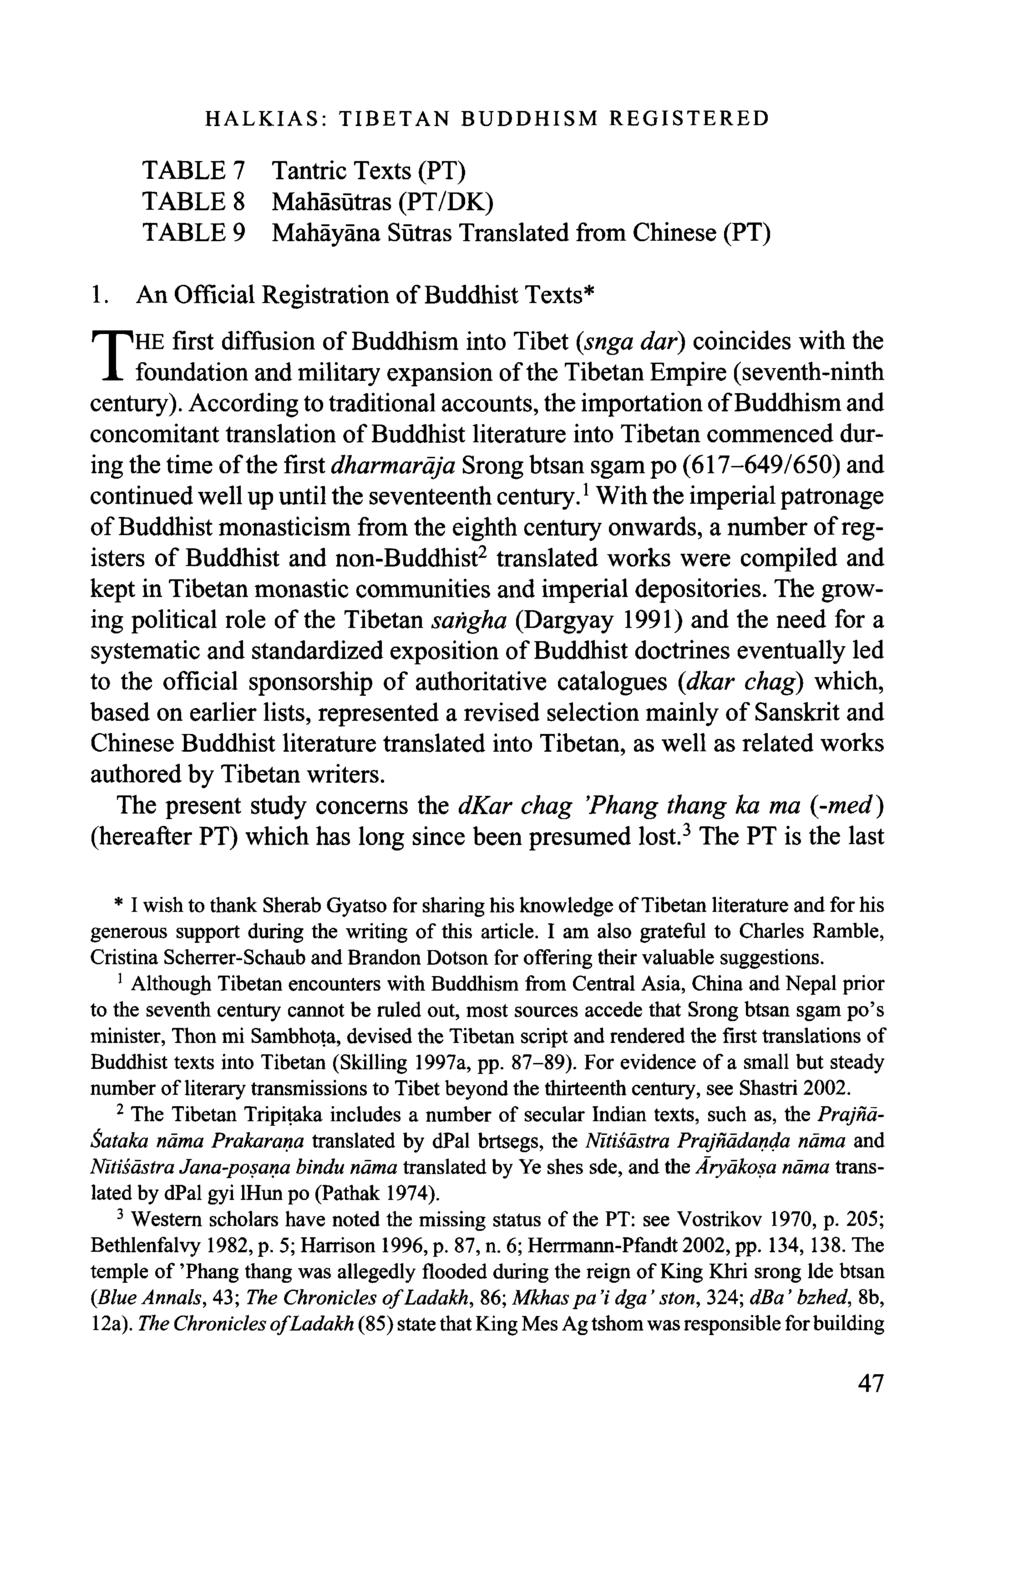 HALKIAS: TIBETAN BUDDHISM REGISTERED TABLE 7 Tantric Texts (PT) TABLE 8 Mahäsütras (PT/DK) TABLE 9 Mahäyäna Sütras Translated from Chinese (PT) 1.